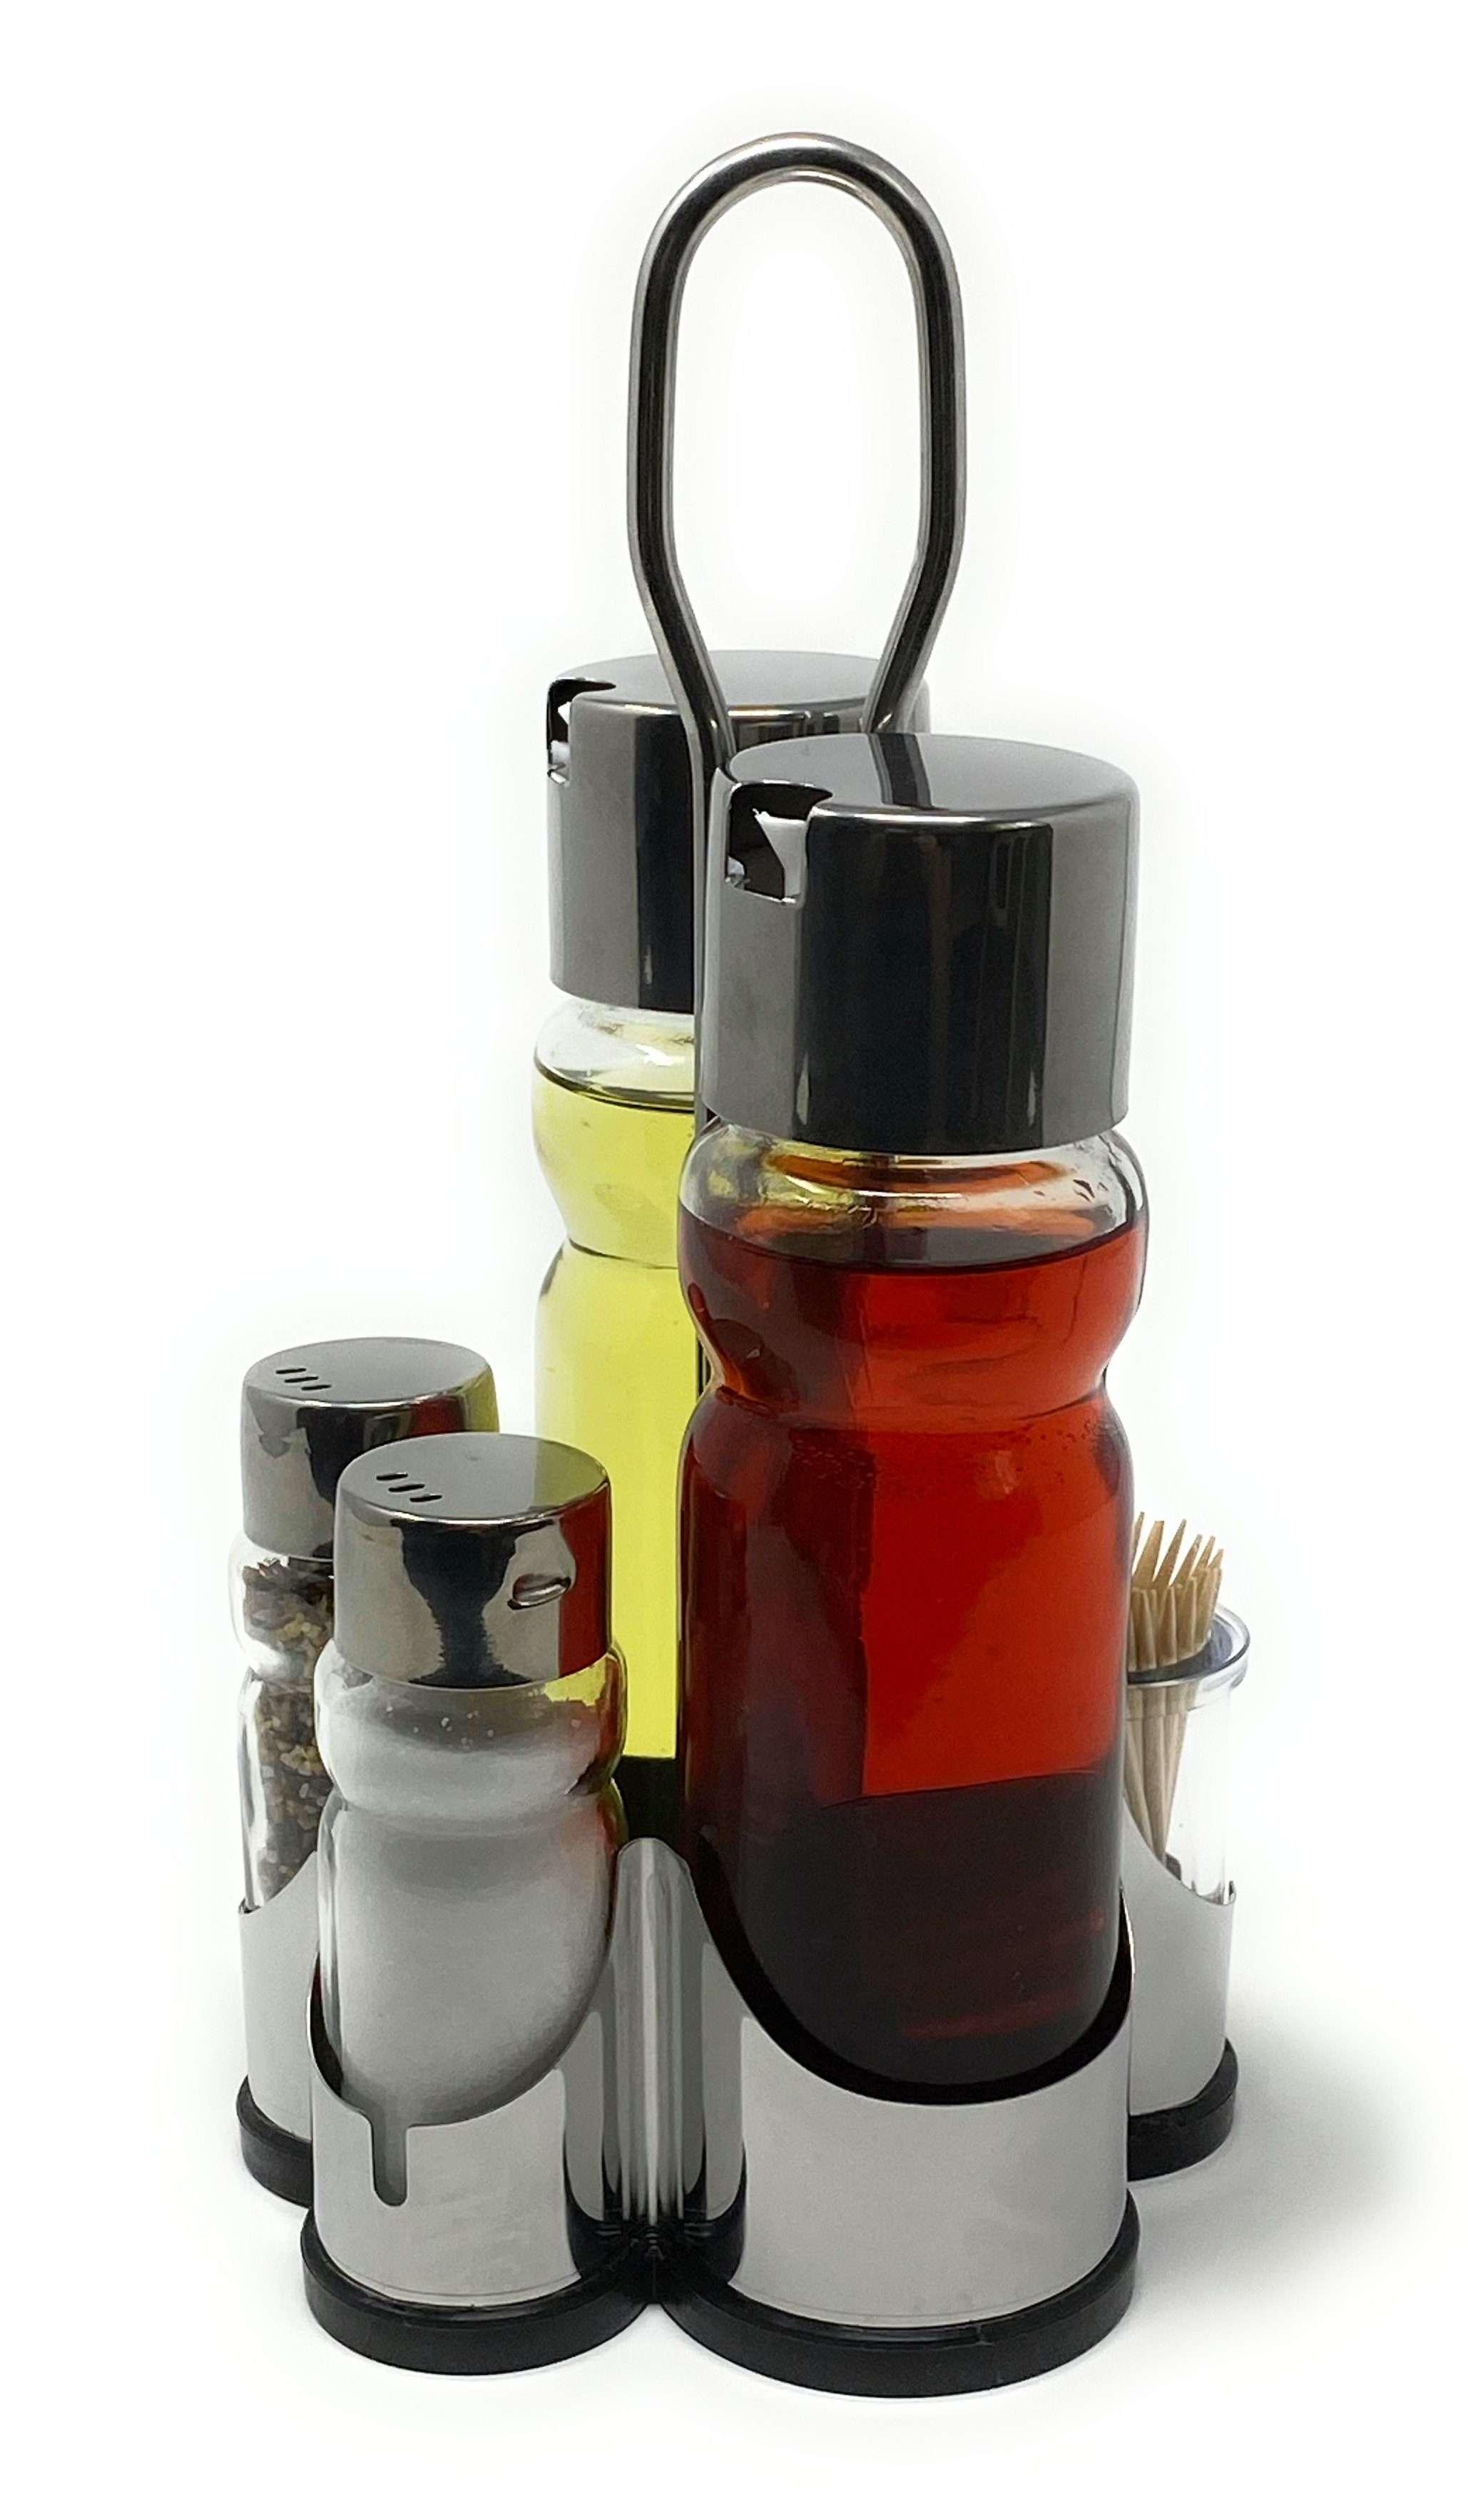 DanDiBo Menage-Set Menage Essig und Öl Spender Glas Salz Pfeffer Zahnstocher Set